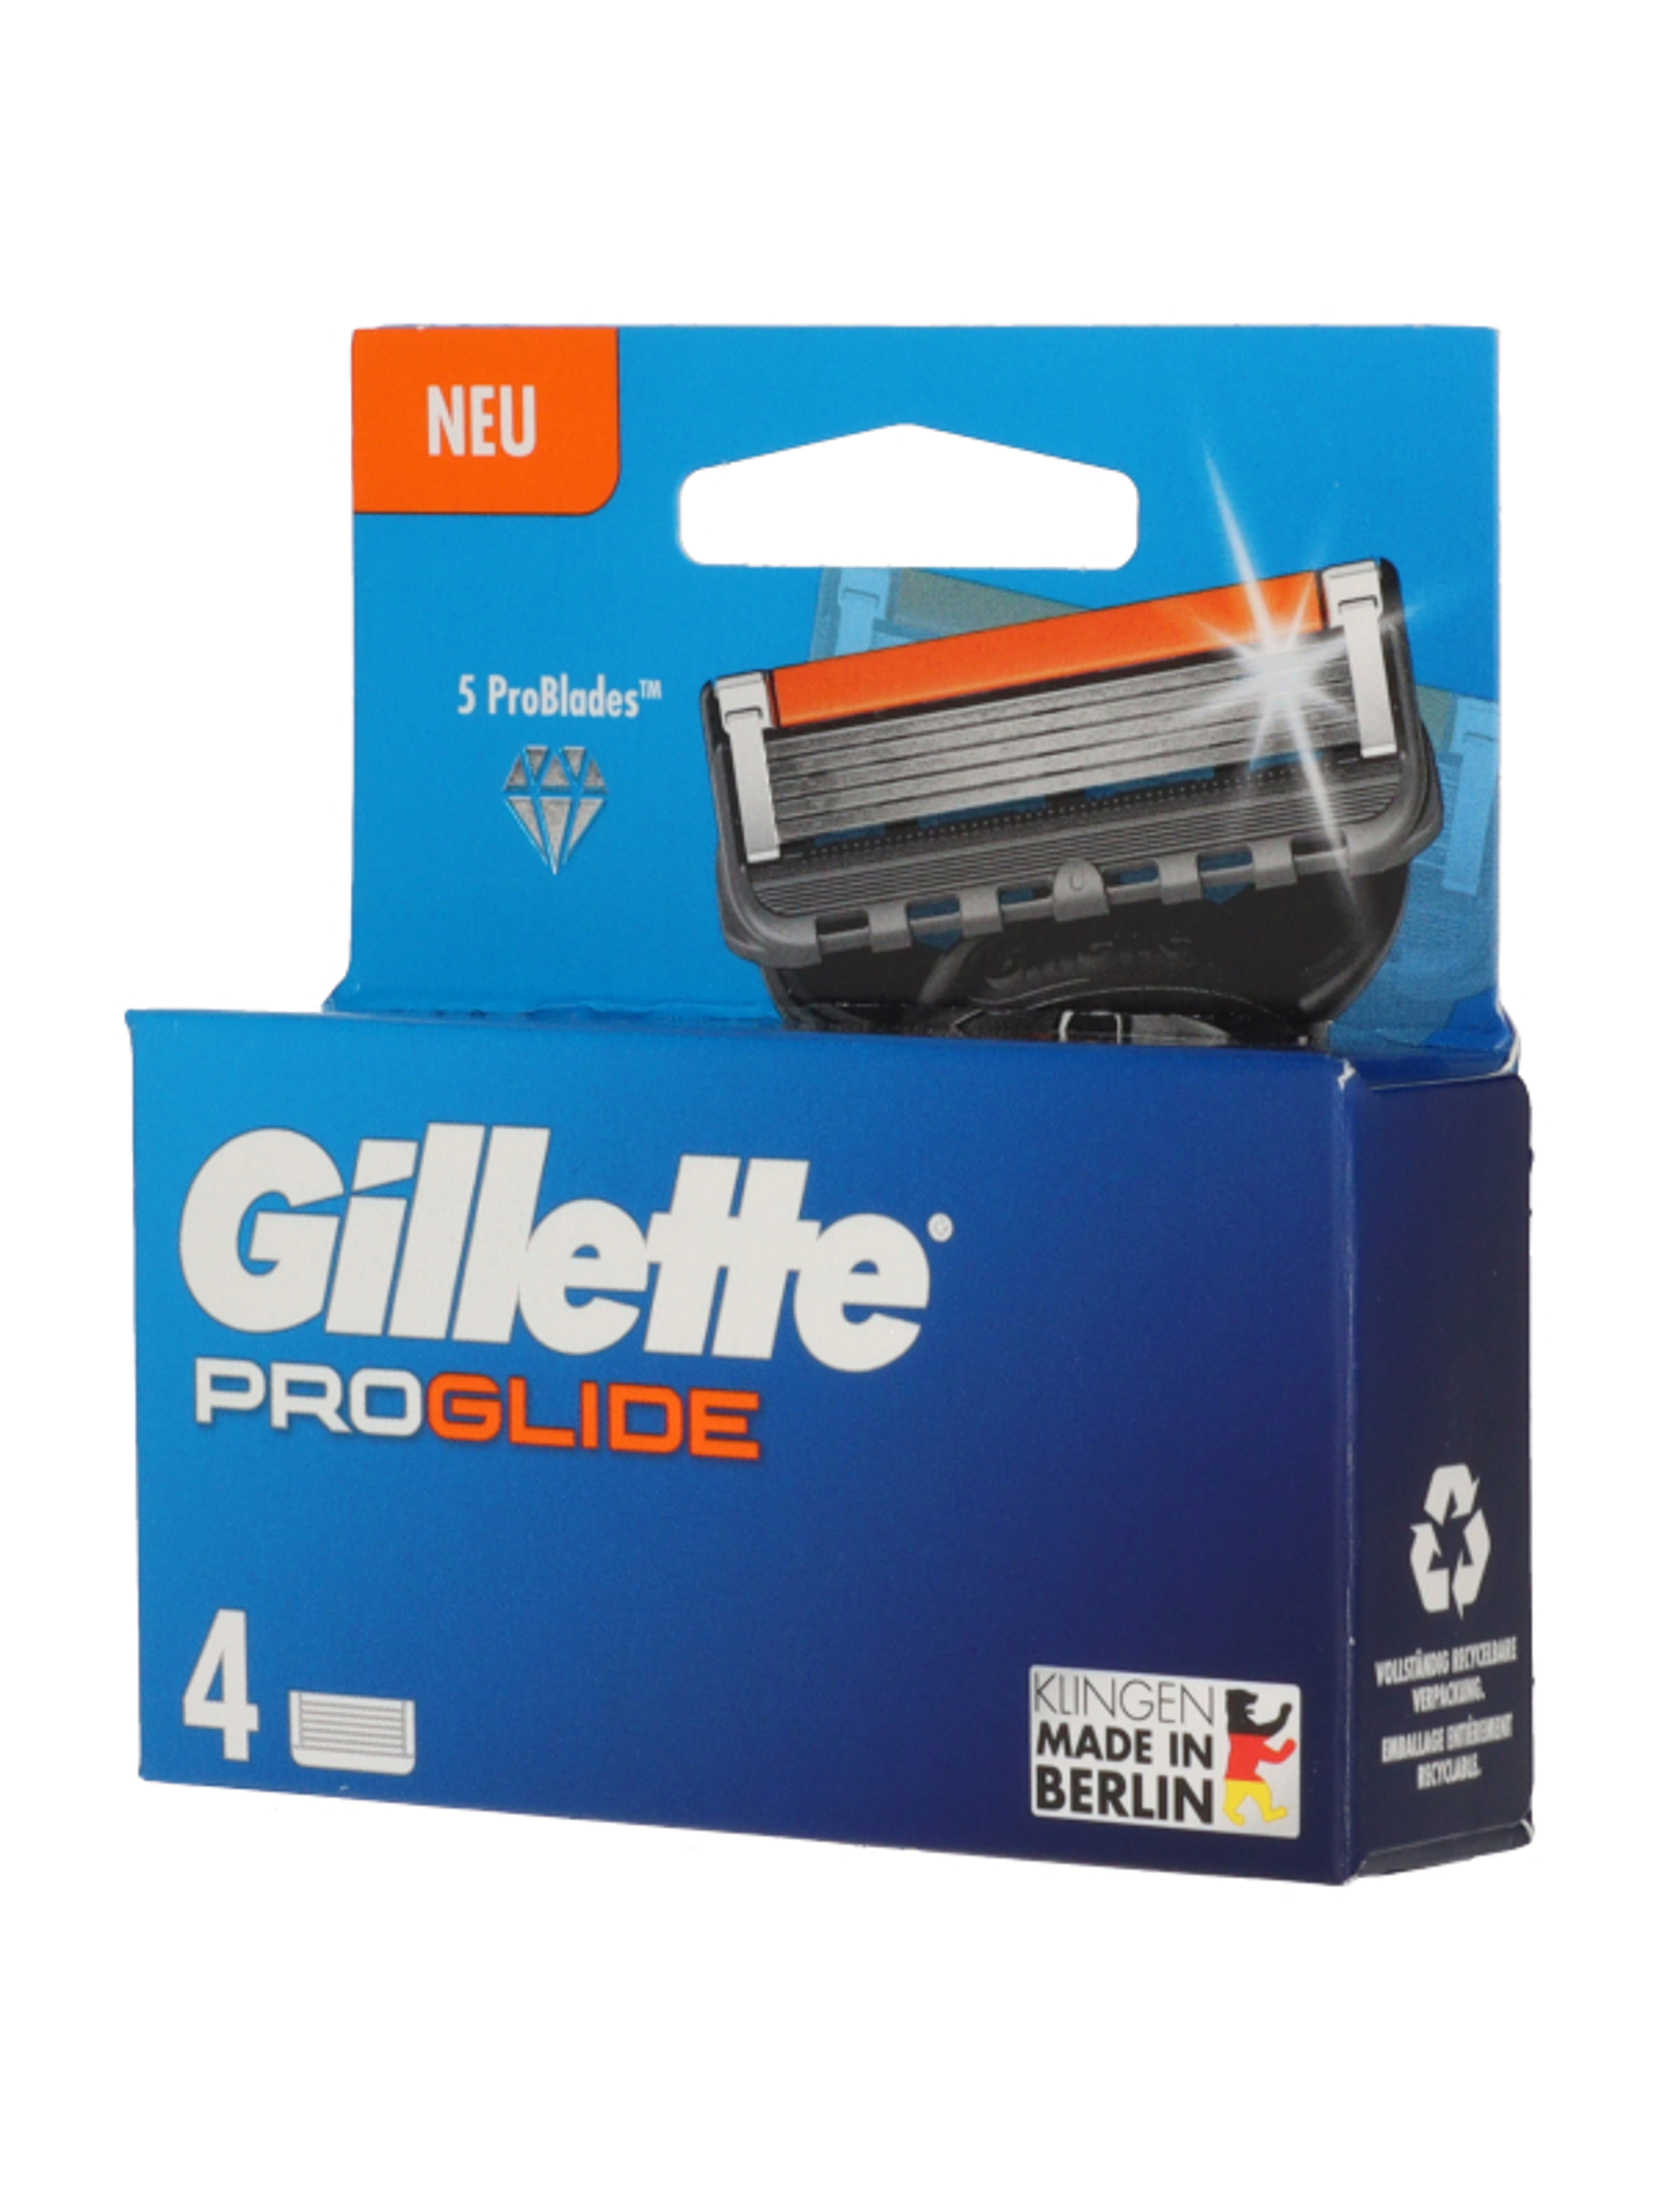 Gillette Fusion ProGlide borotvabetét 5 pengés - 4 db-2